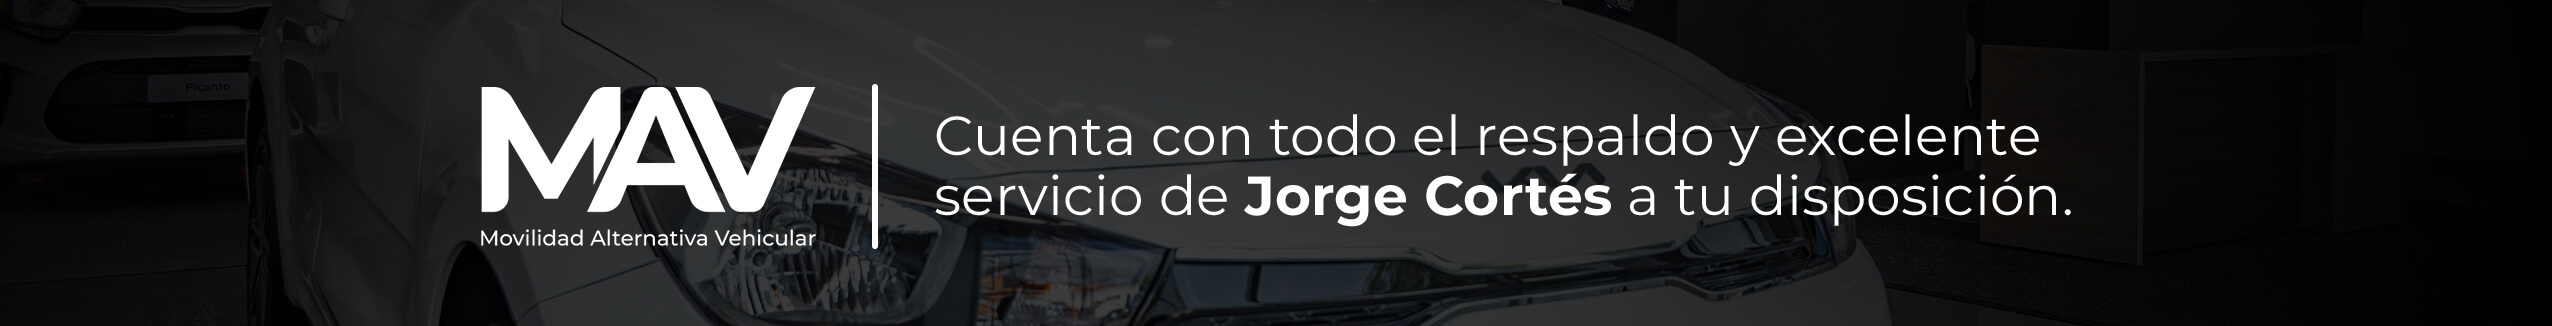 Jorge Cortés MAV - Movilidad Alternativa Vehicular